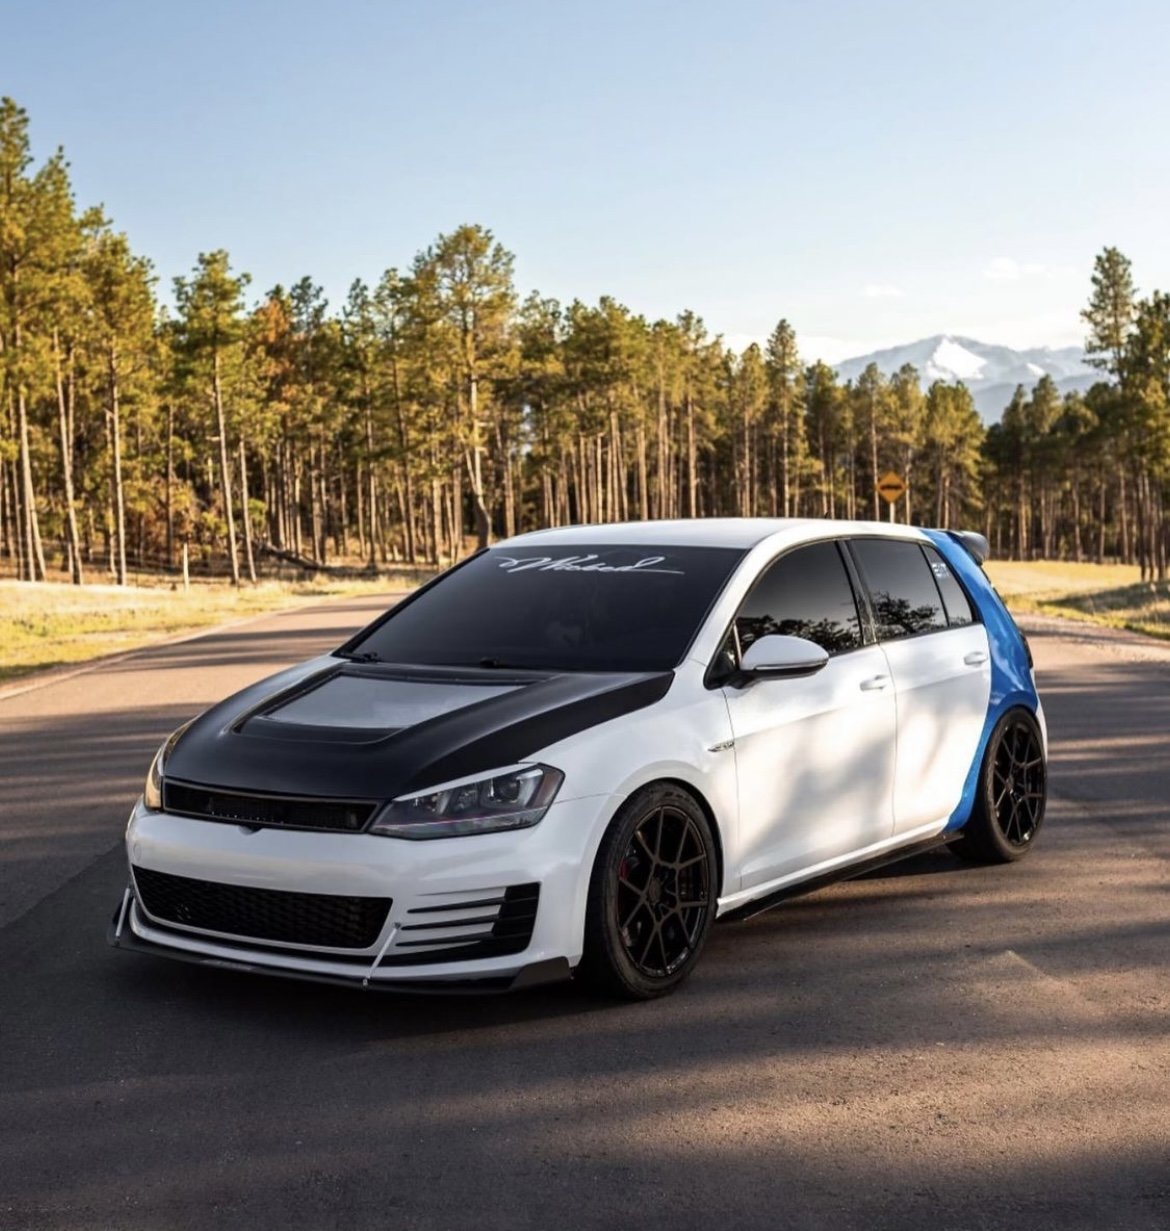 CMST Carbon Fiber Front Grill for Volkswagen GTI MK7 MK7.5